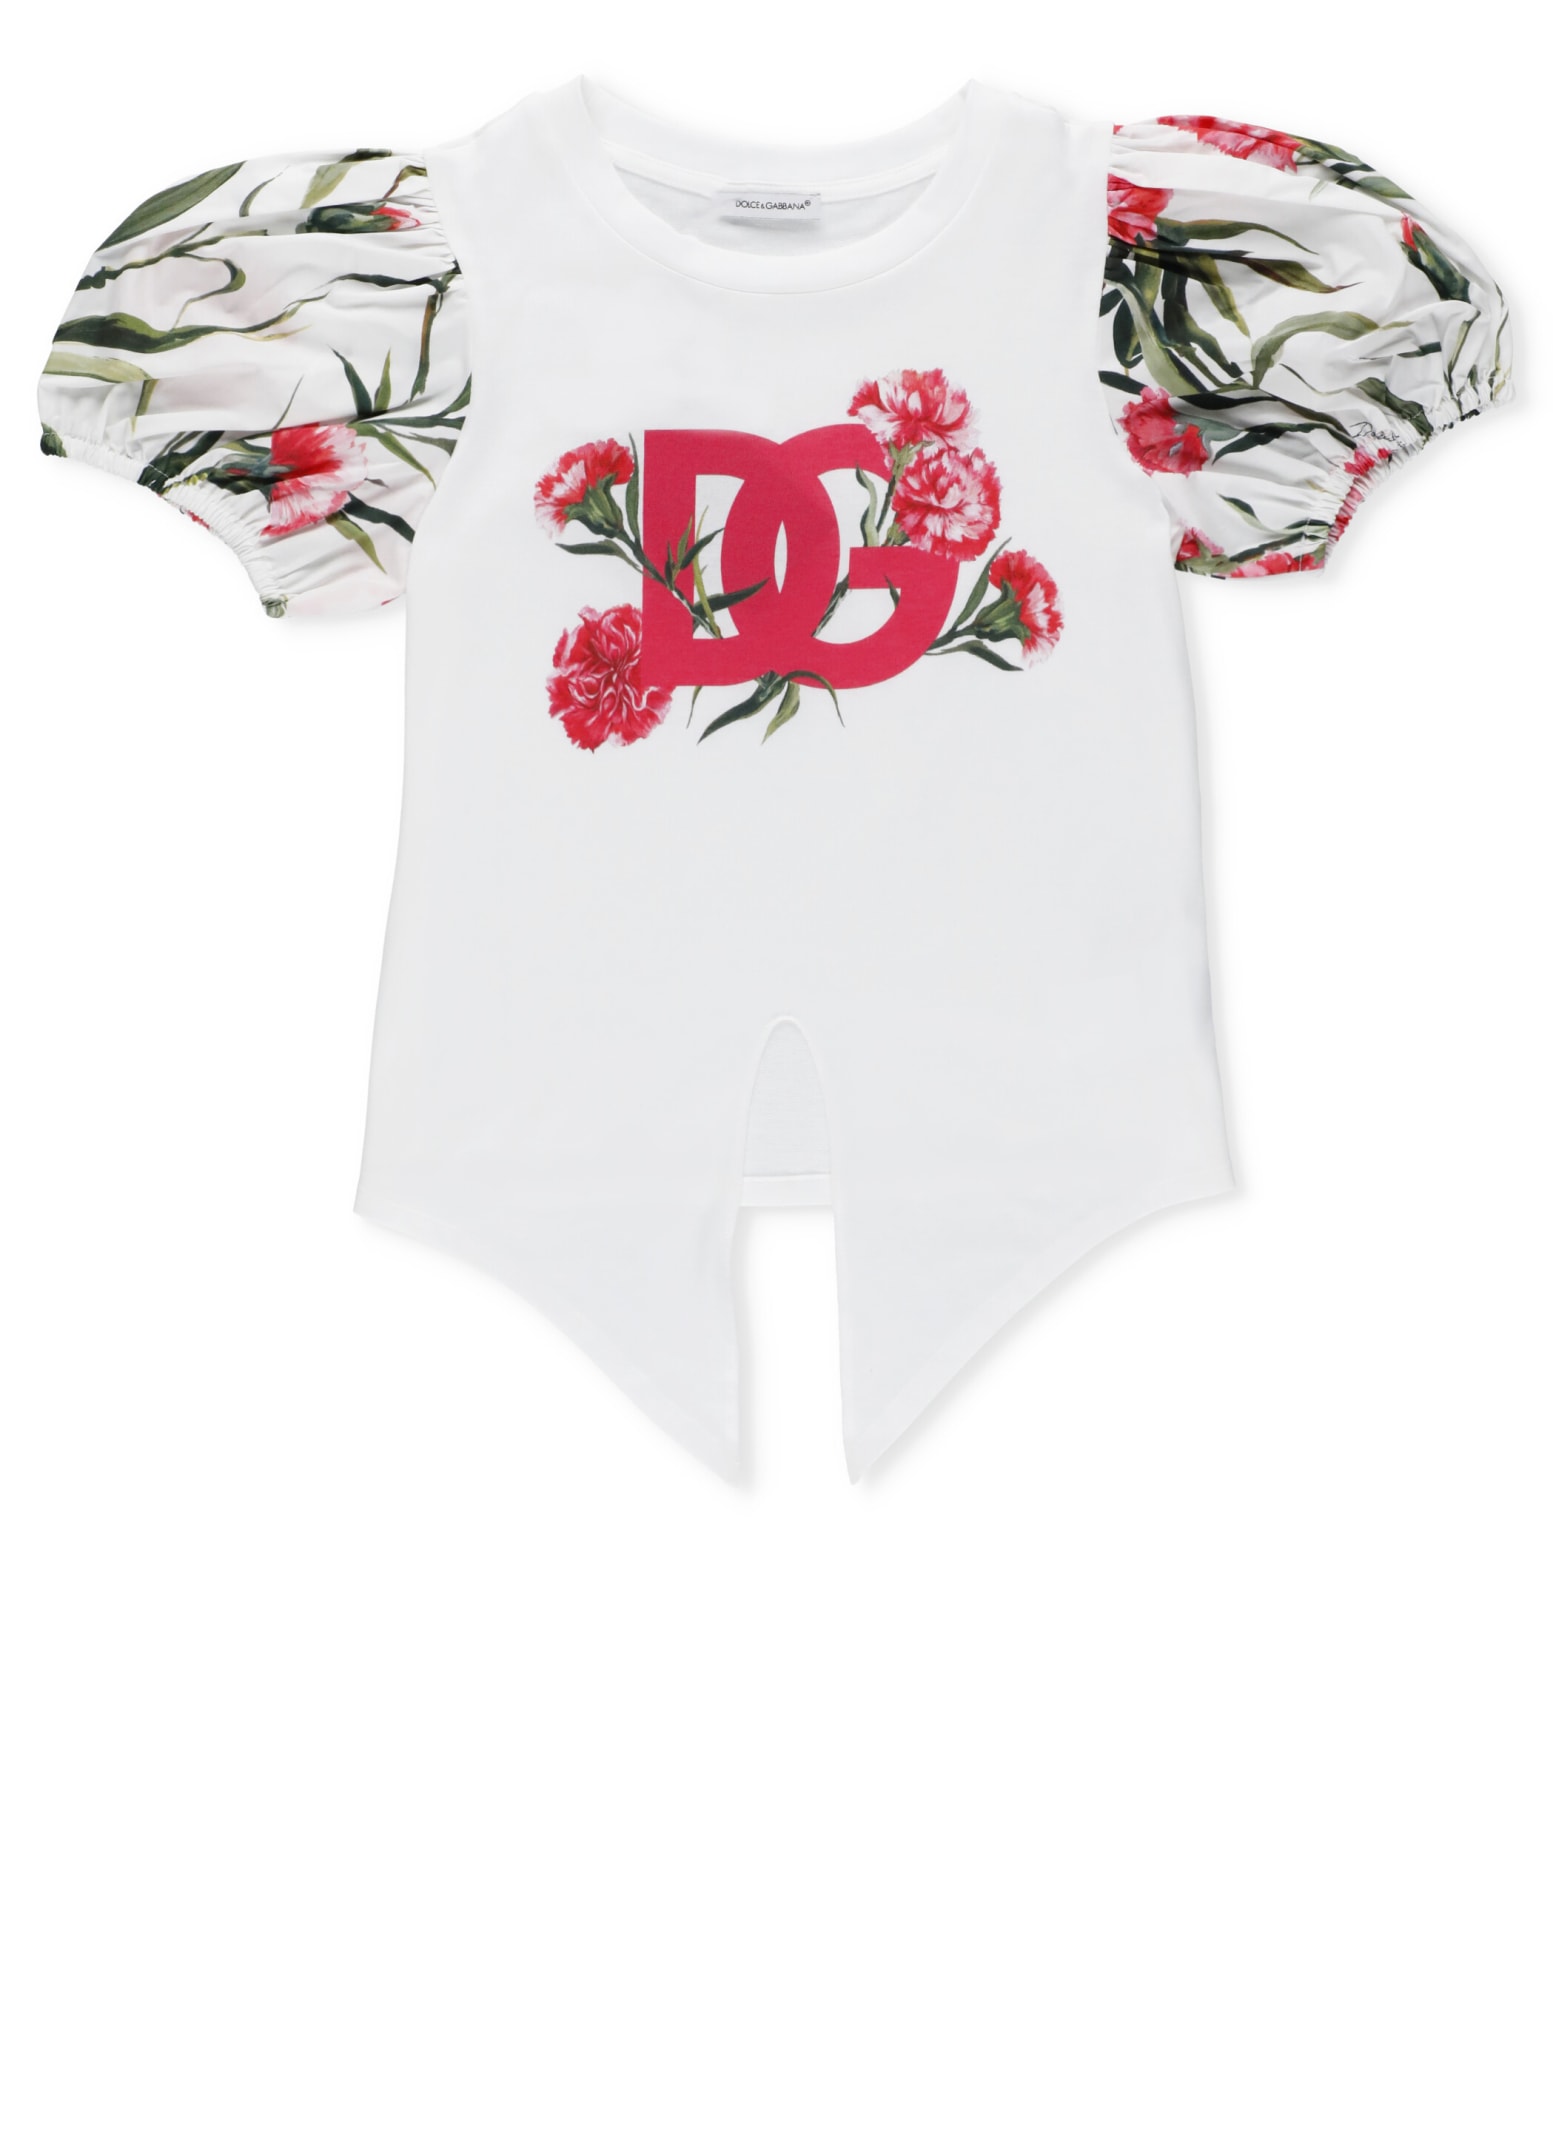 Dolce & Gabbana Kids' Cotton T-shirt In Garofani New F.bco